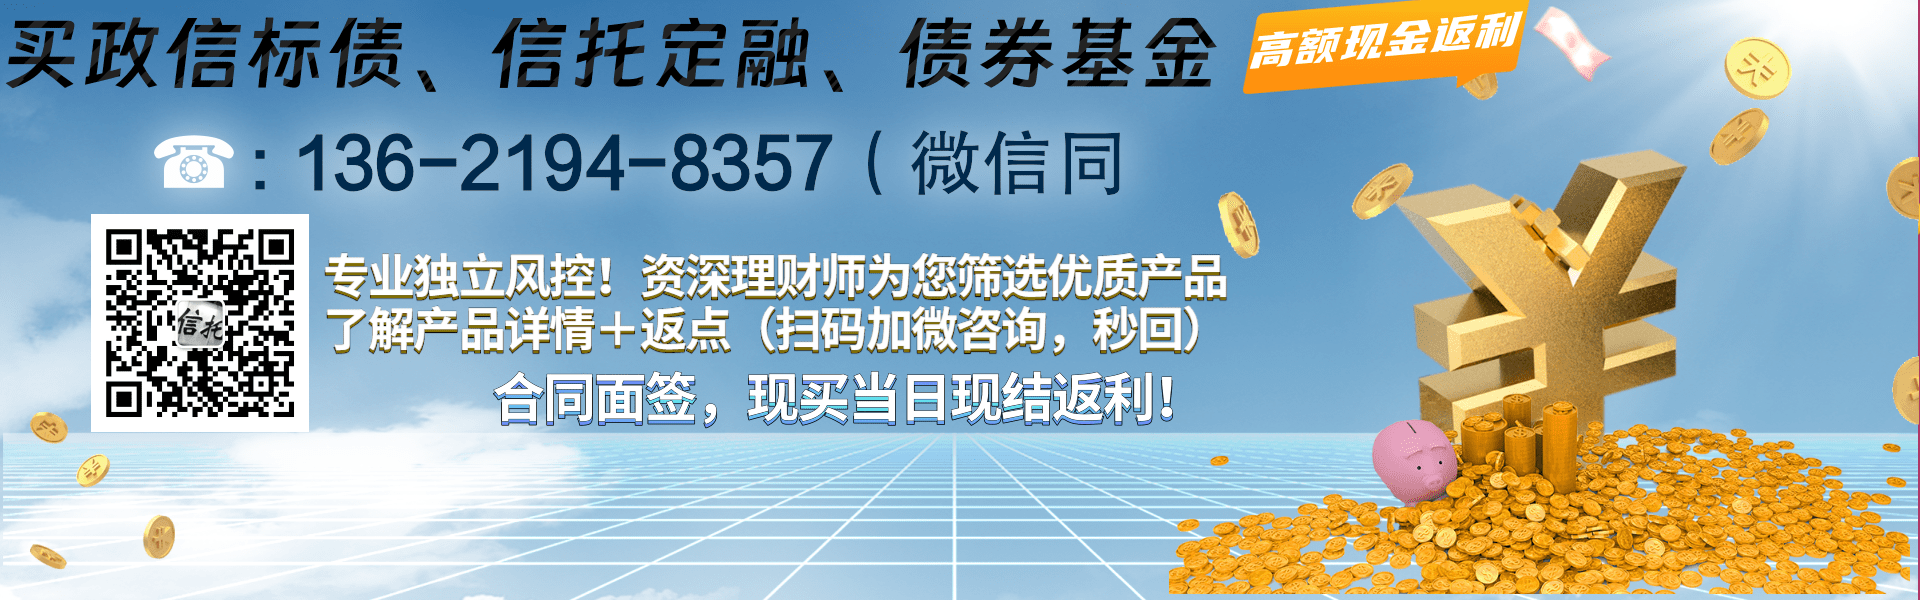 重庆市潼南区旅游开发债权资产政信项目1/2年